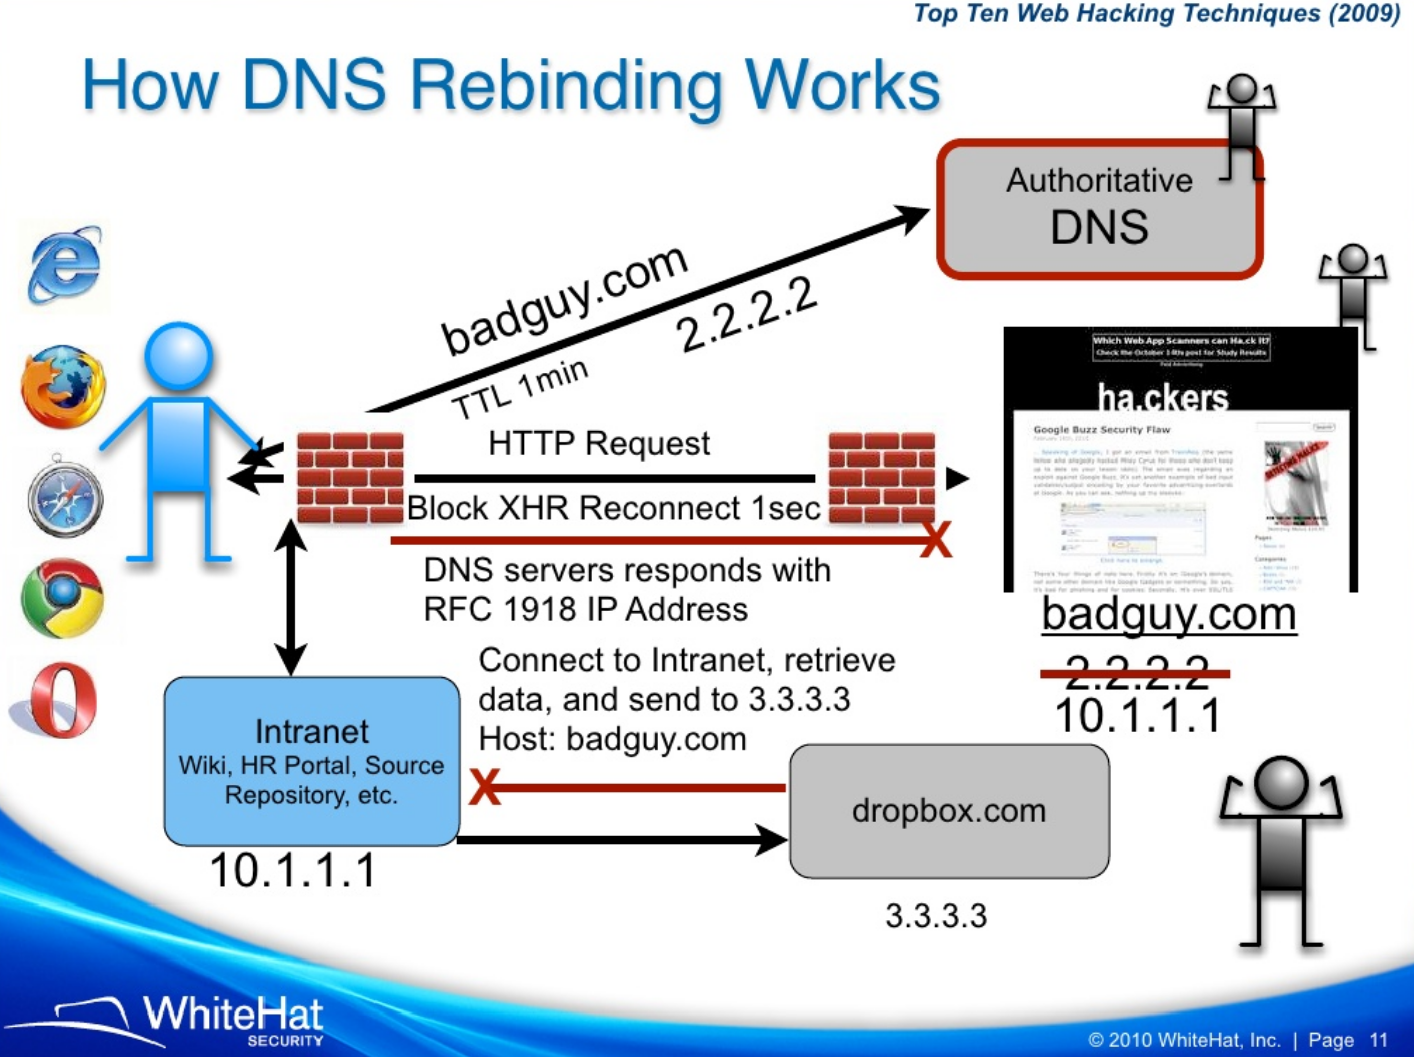 Dns nullsproxy com порт. Что такое авторитативный ДНС сервер. DNS rebinding. DNS rebinding схема. История DNS.